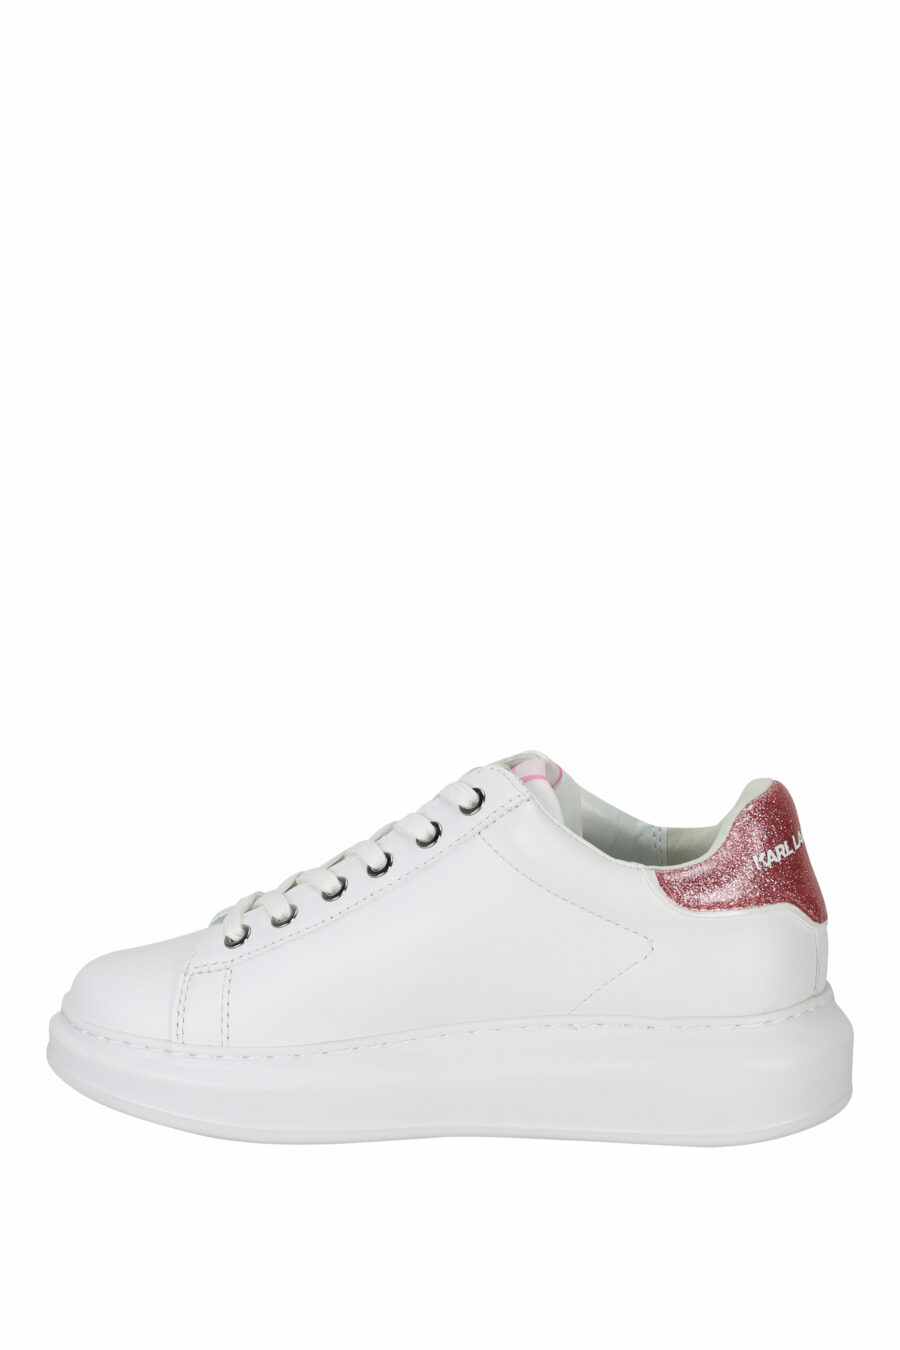 Zapatillas blancas "Kapri" con logo en goma y detalle rosa - 5059529351099 2